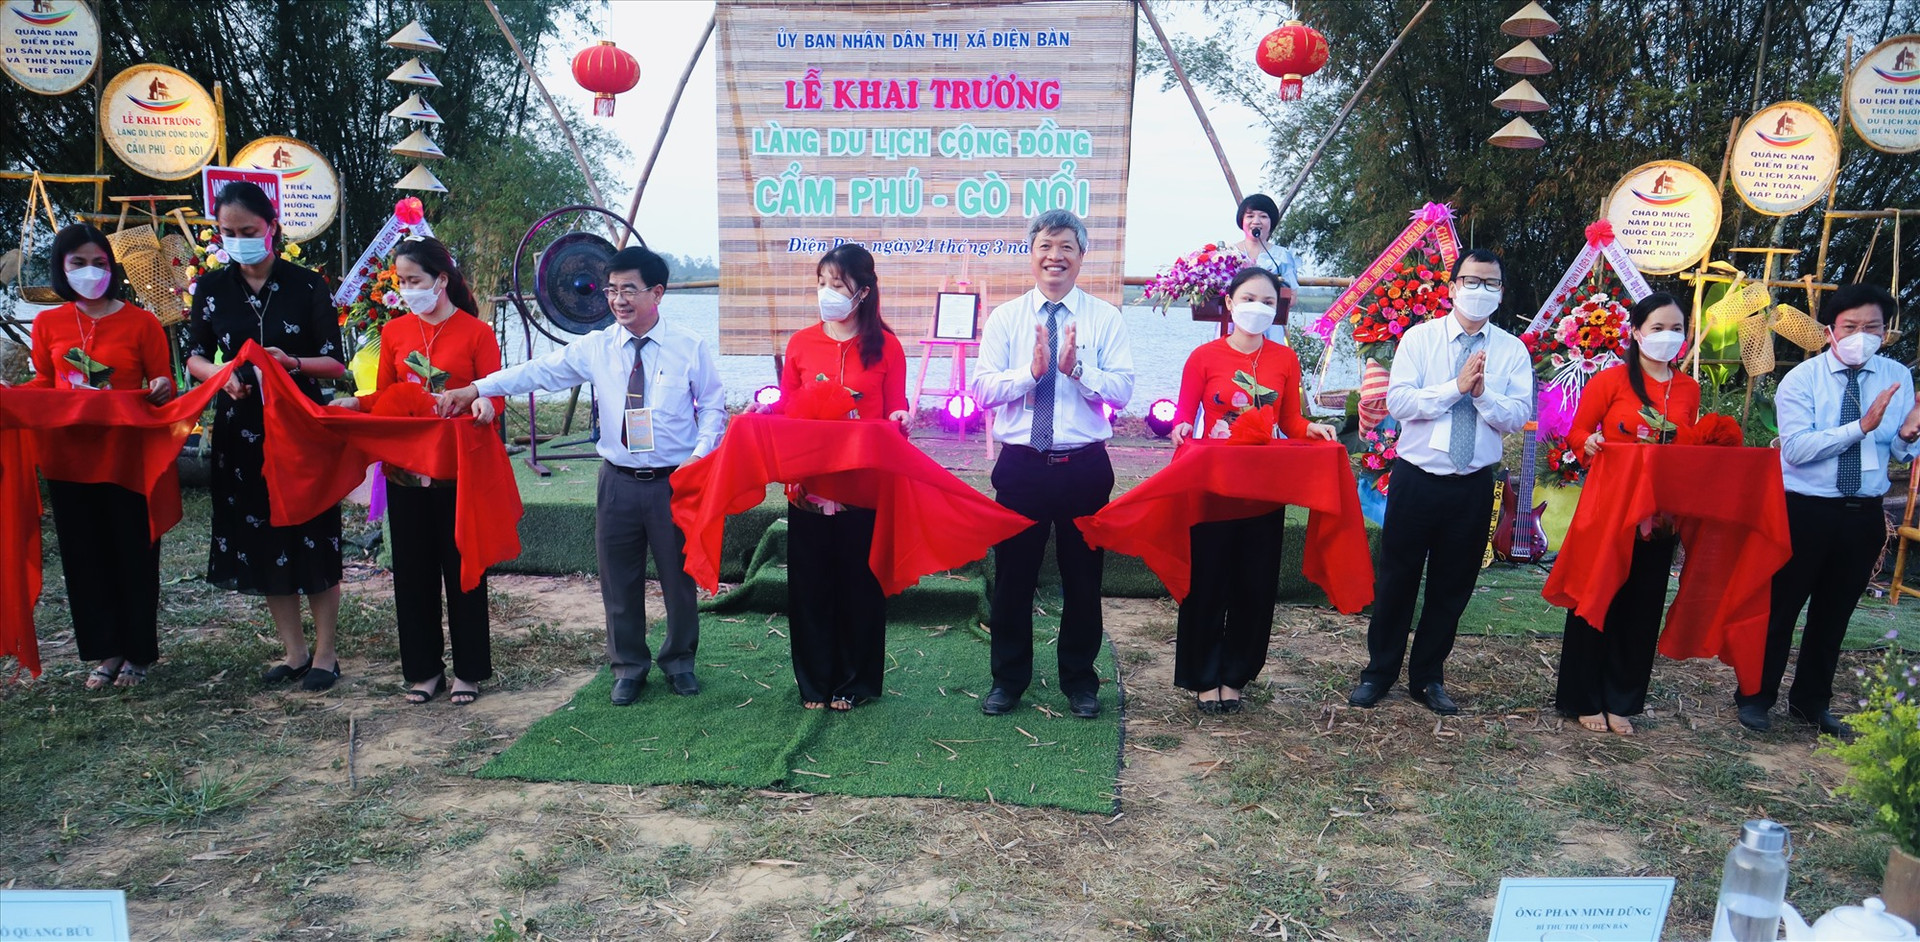 Đại biểu cắt băng khai trương làng du lịch cộng đồng Cẩm Phú - Gò Nổi. Ảnh: T.L